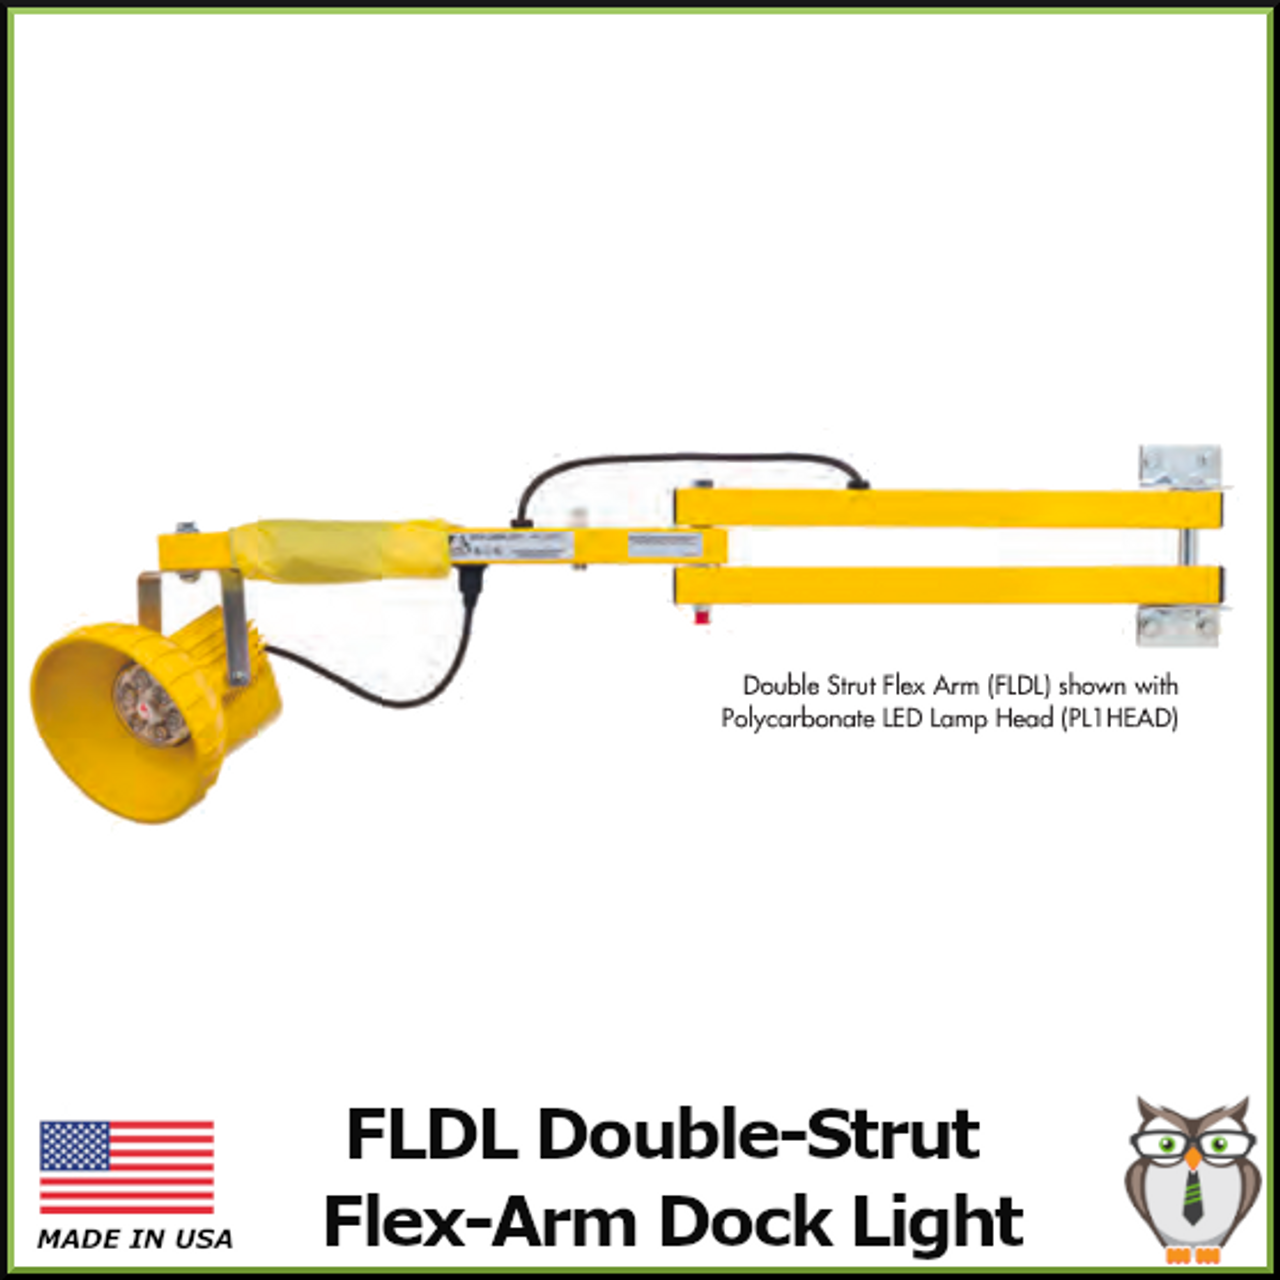 FLDL Double-Strut Flex-Arm Dock Light  with Polycarbonate LED Lamp Head